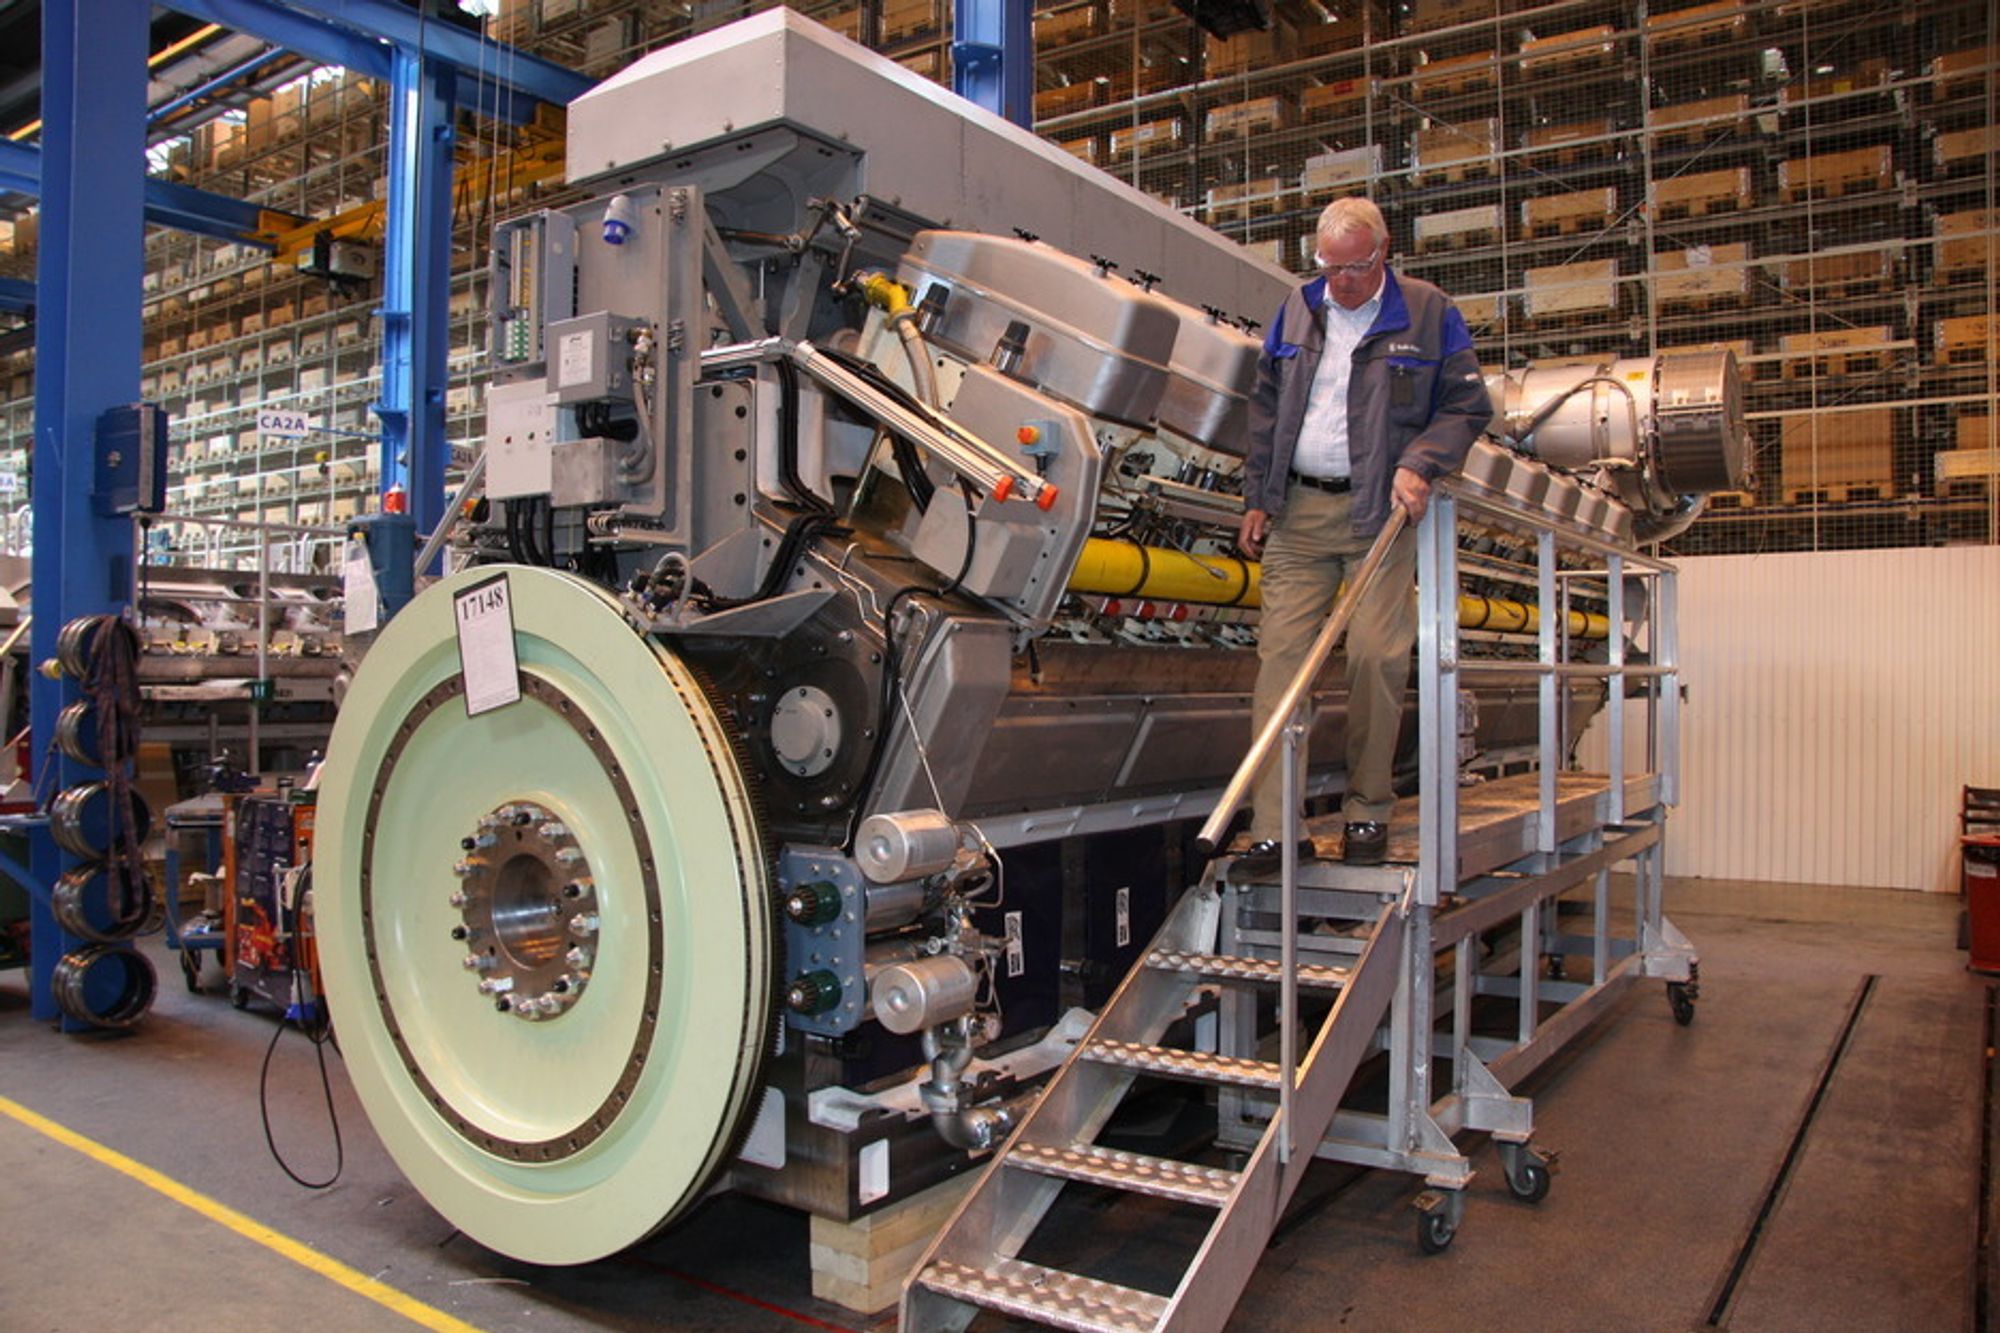 Fire-takter:  Rolls-Royce i Bergen produserer LNG-motorer som går kun på gass, mens DF-motorrne må ha noe diesel for å antenne gassen. 